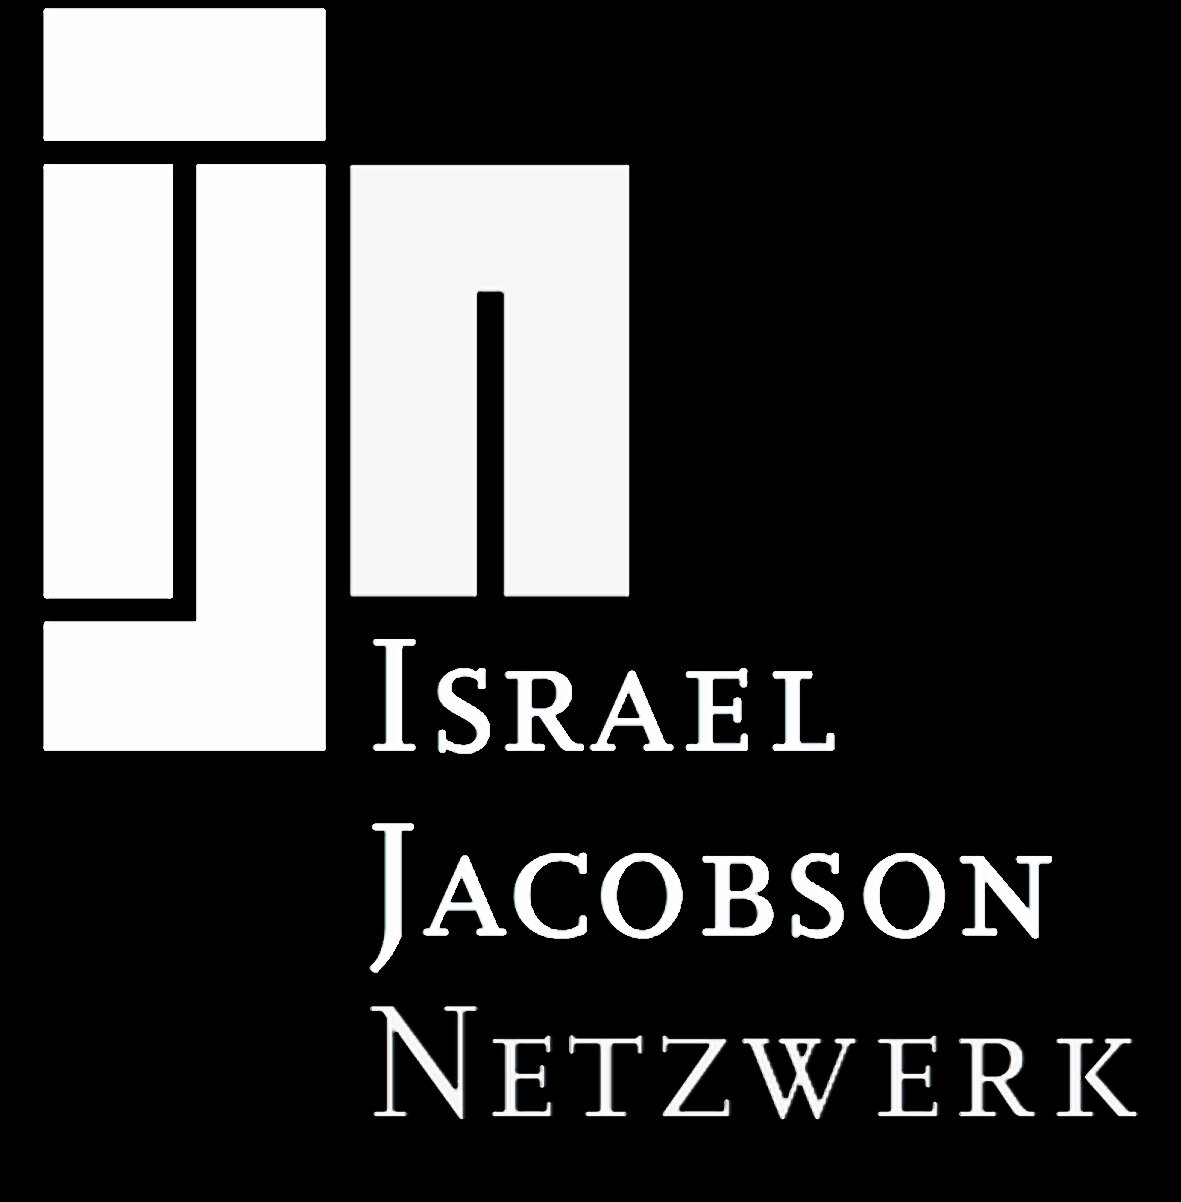 Israel Jacobson Netzwerk inverted.jpg